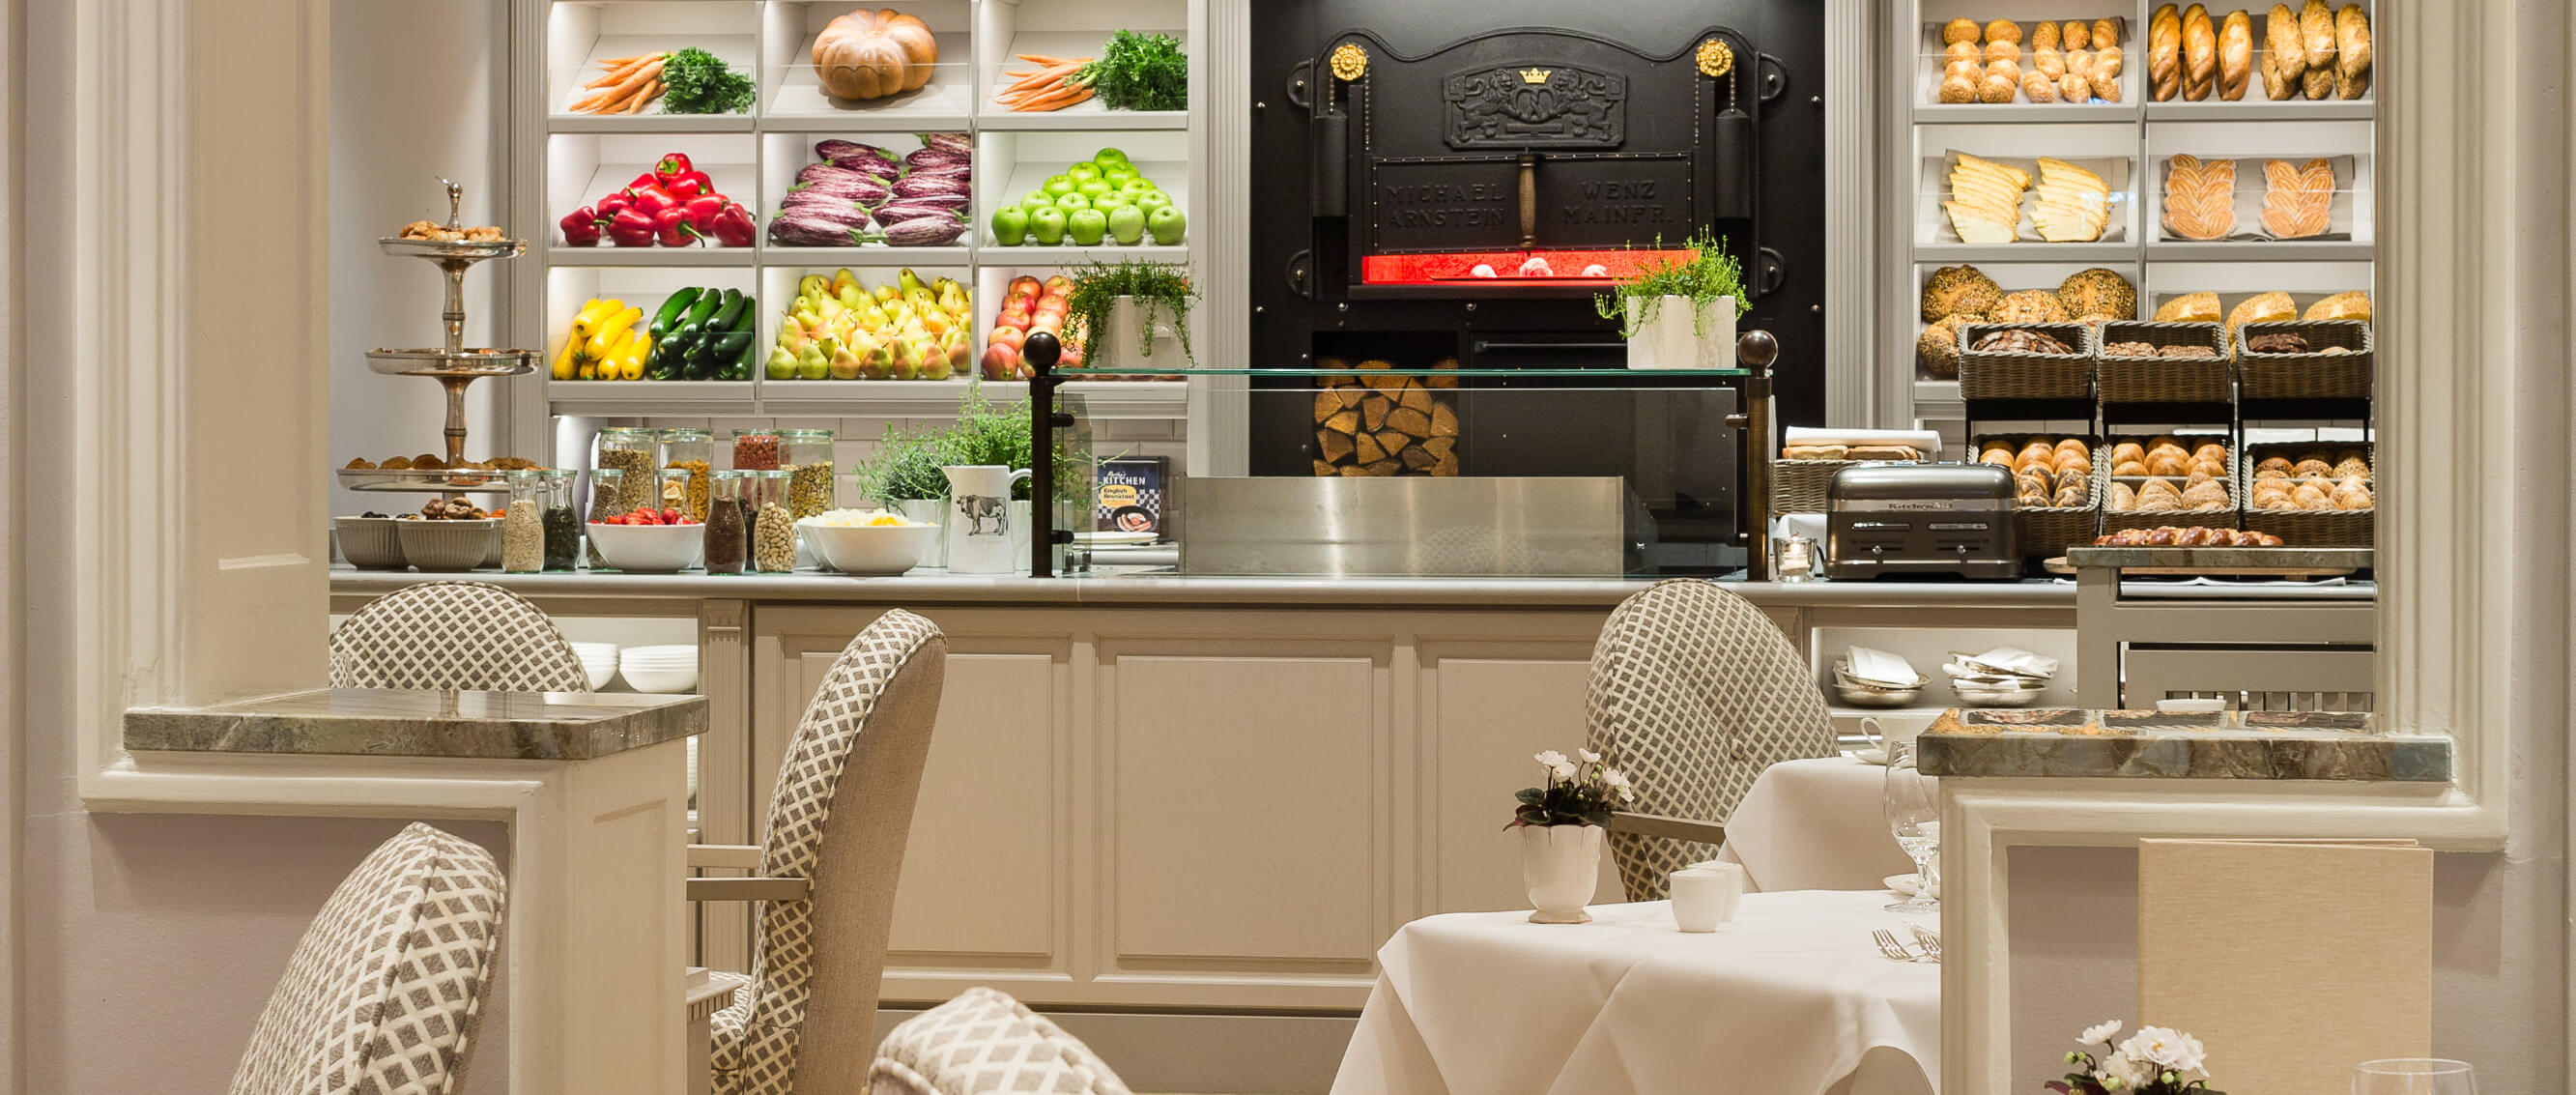 Café Condi - Fairmont Hotel Vier Jahreszeiten luxury Hotel | Frühstückssets